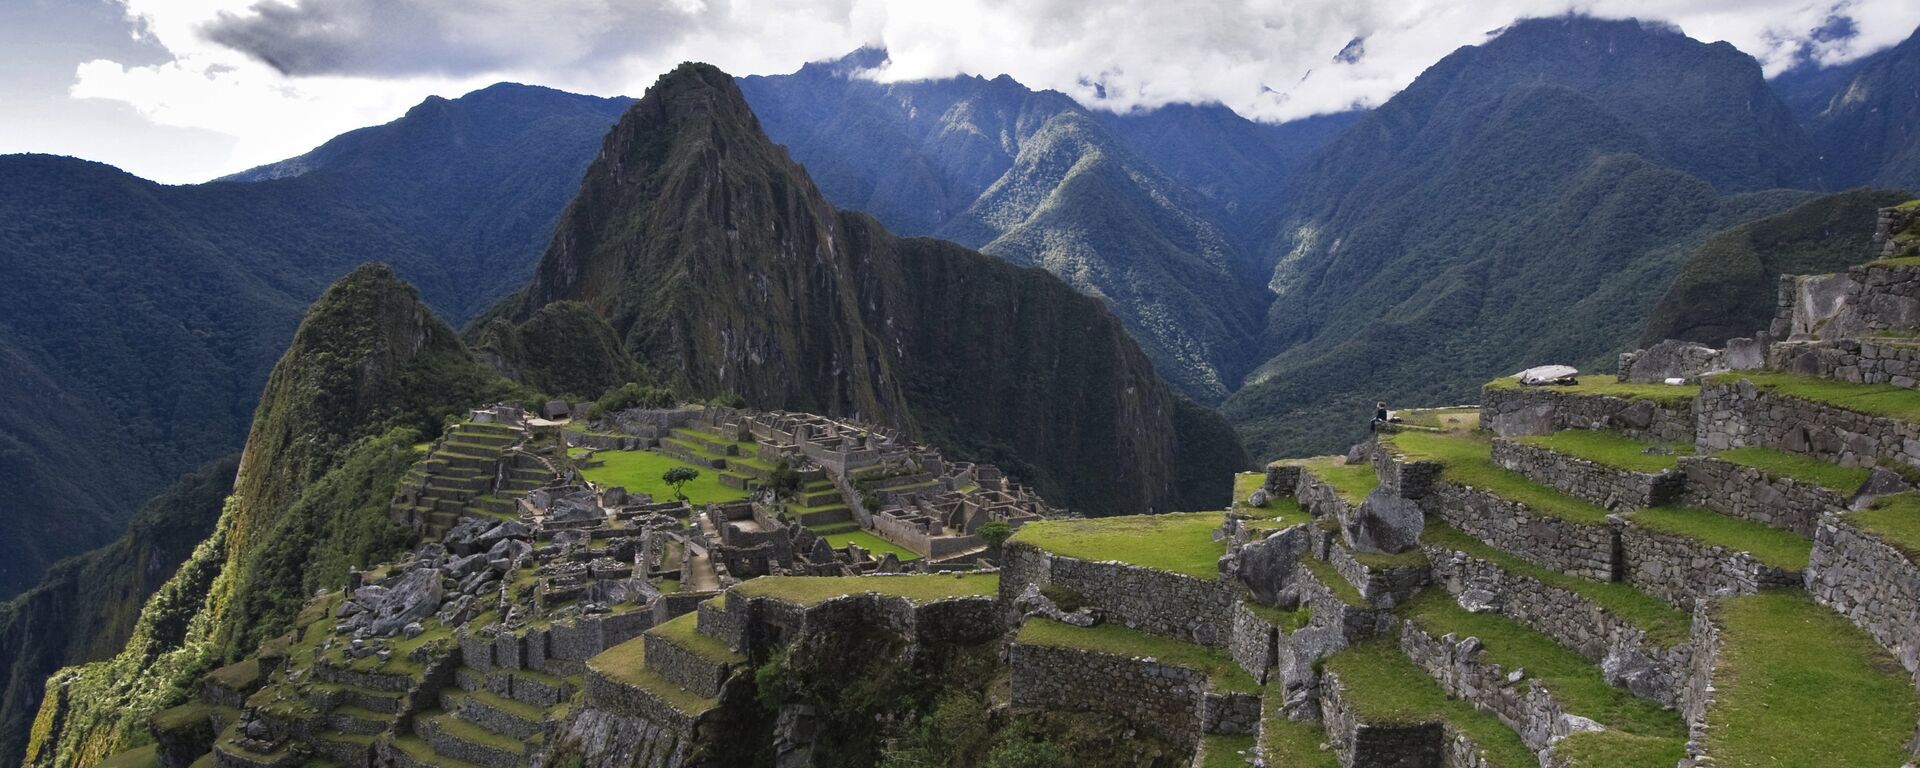 Vista de la montaña Huayna Picchu y las ruinas de la antigua ciudad de Machu Picchu. - Sputnik Mundo, 1920, 19.03.2021